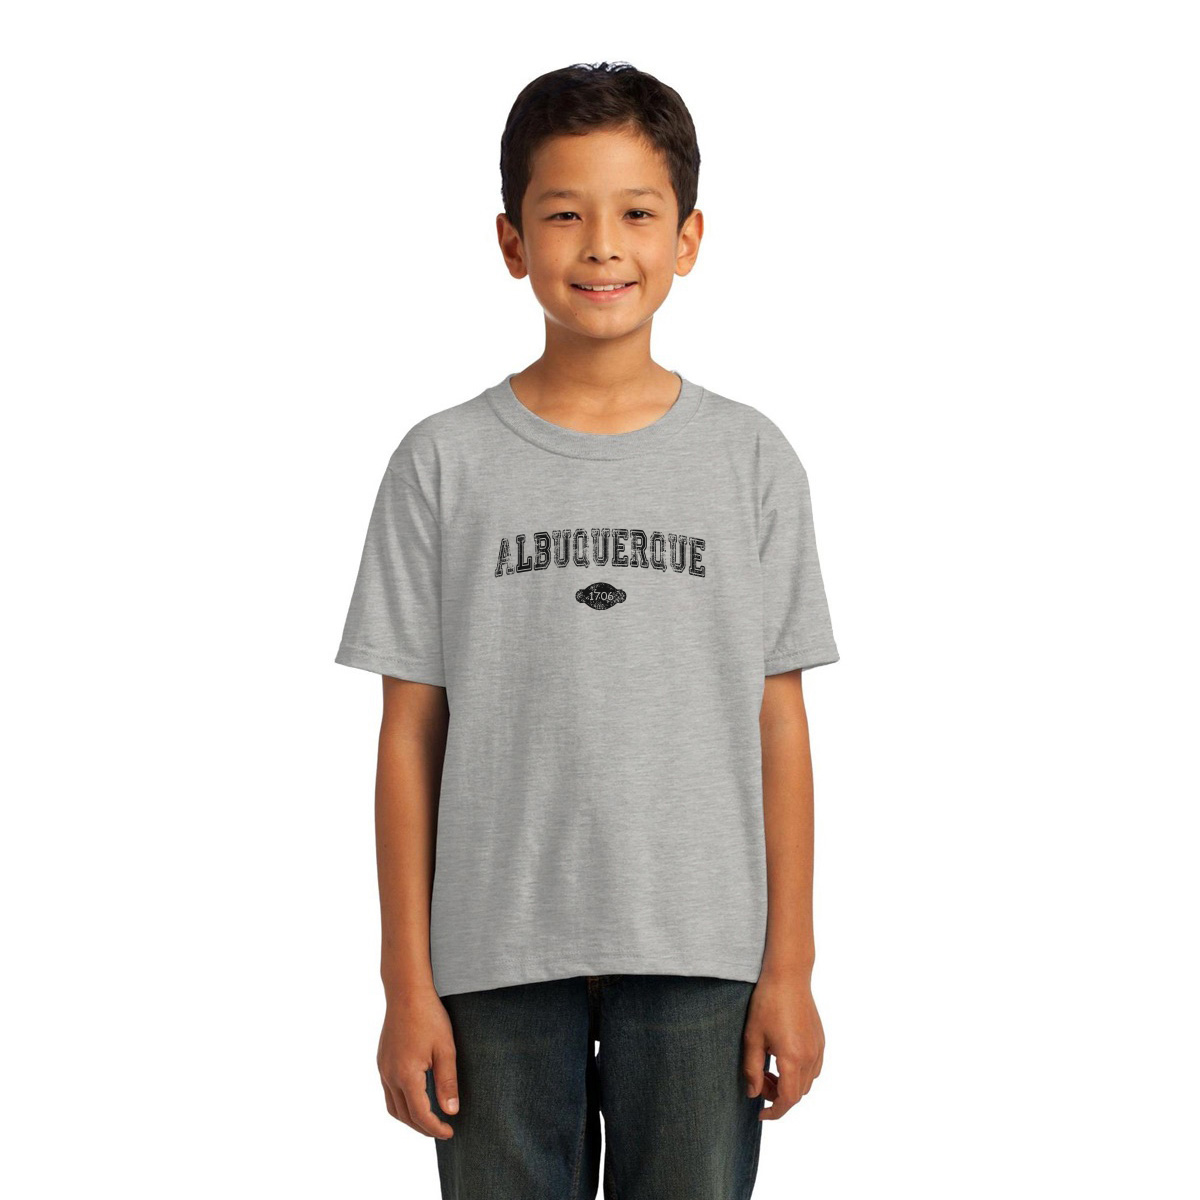 Albuquerque 1706 Represent Toddler T-shirt | Gray